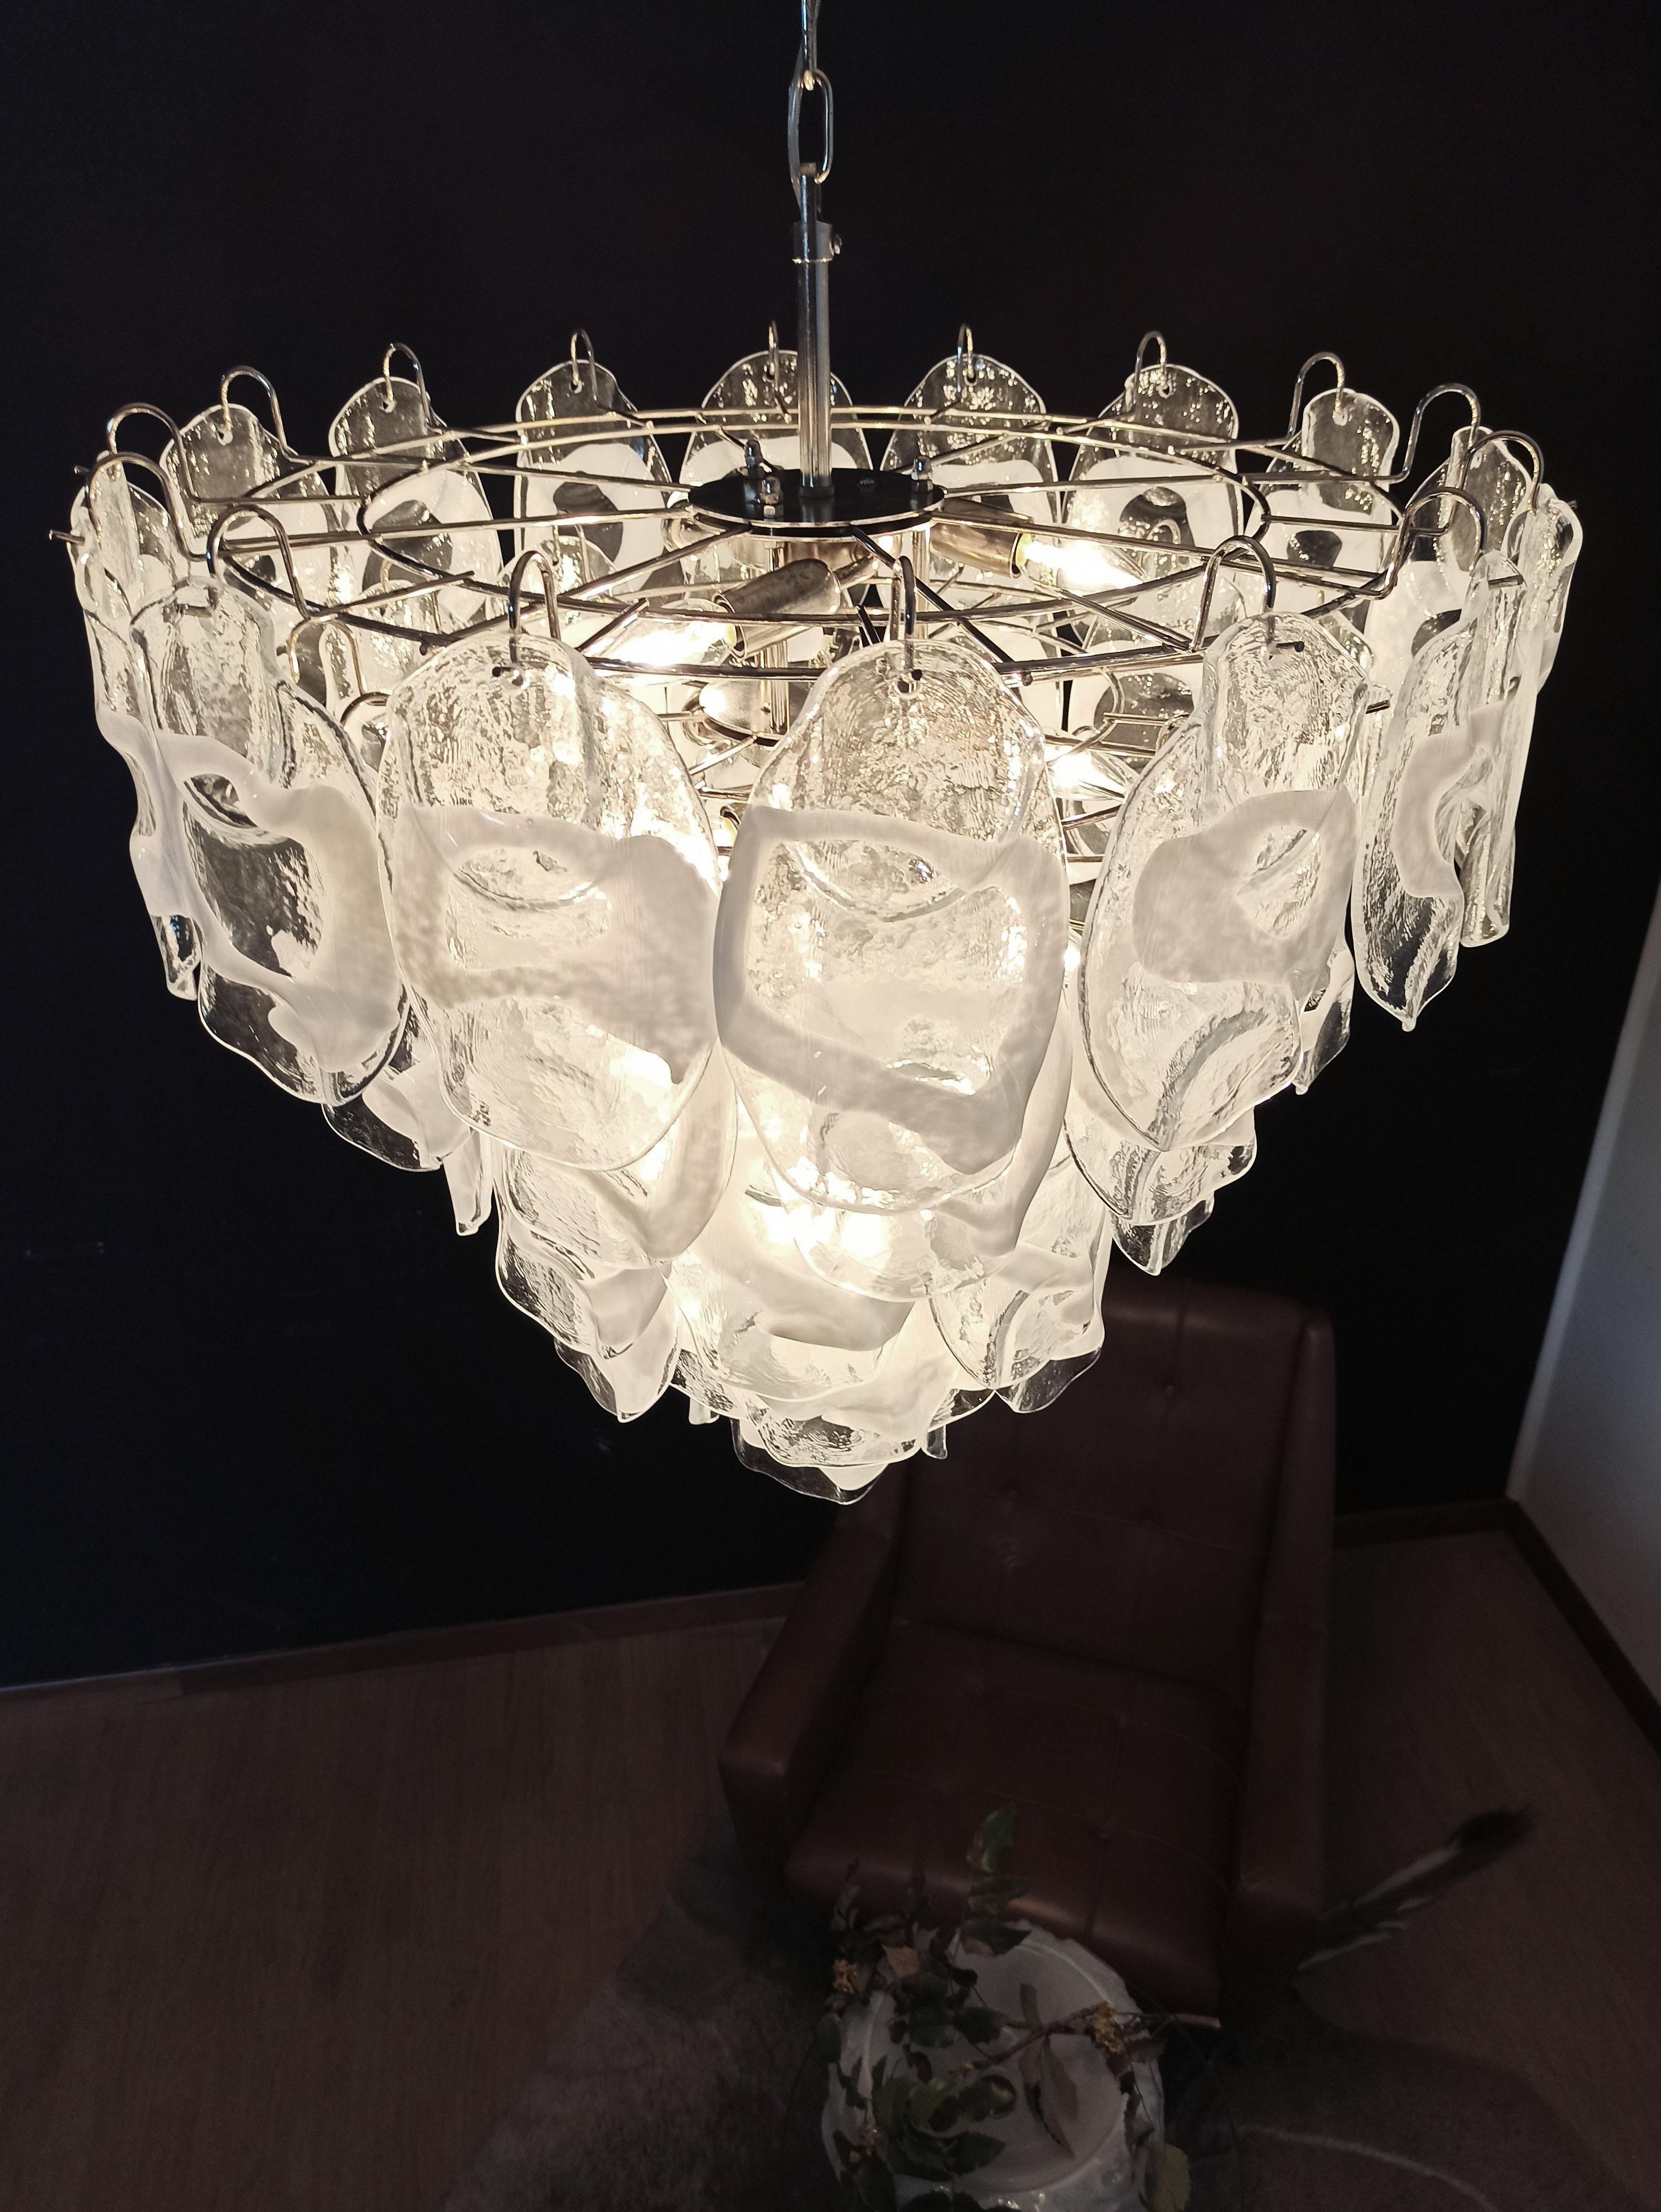 Huge Vintage Italian Murano Chandelier Lamp by Vistosi, 57 Glasses In Good Condition For Sale In Gaiarine Frazione Francenigo (TV), IT